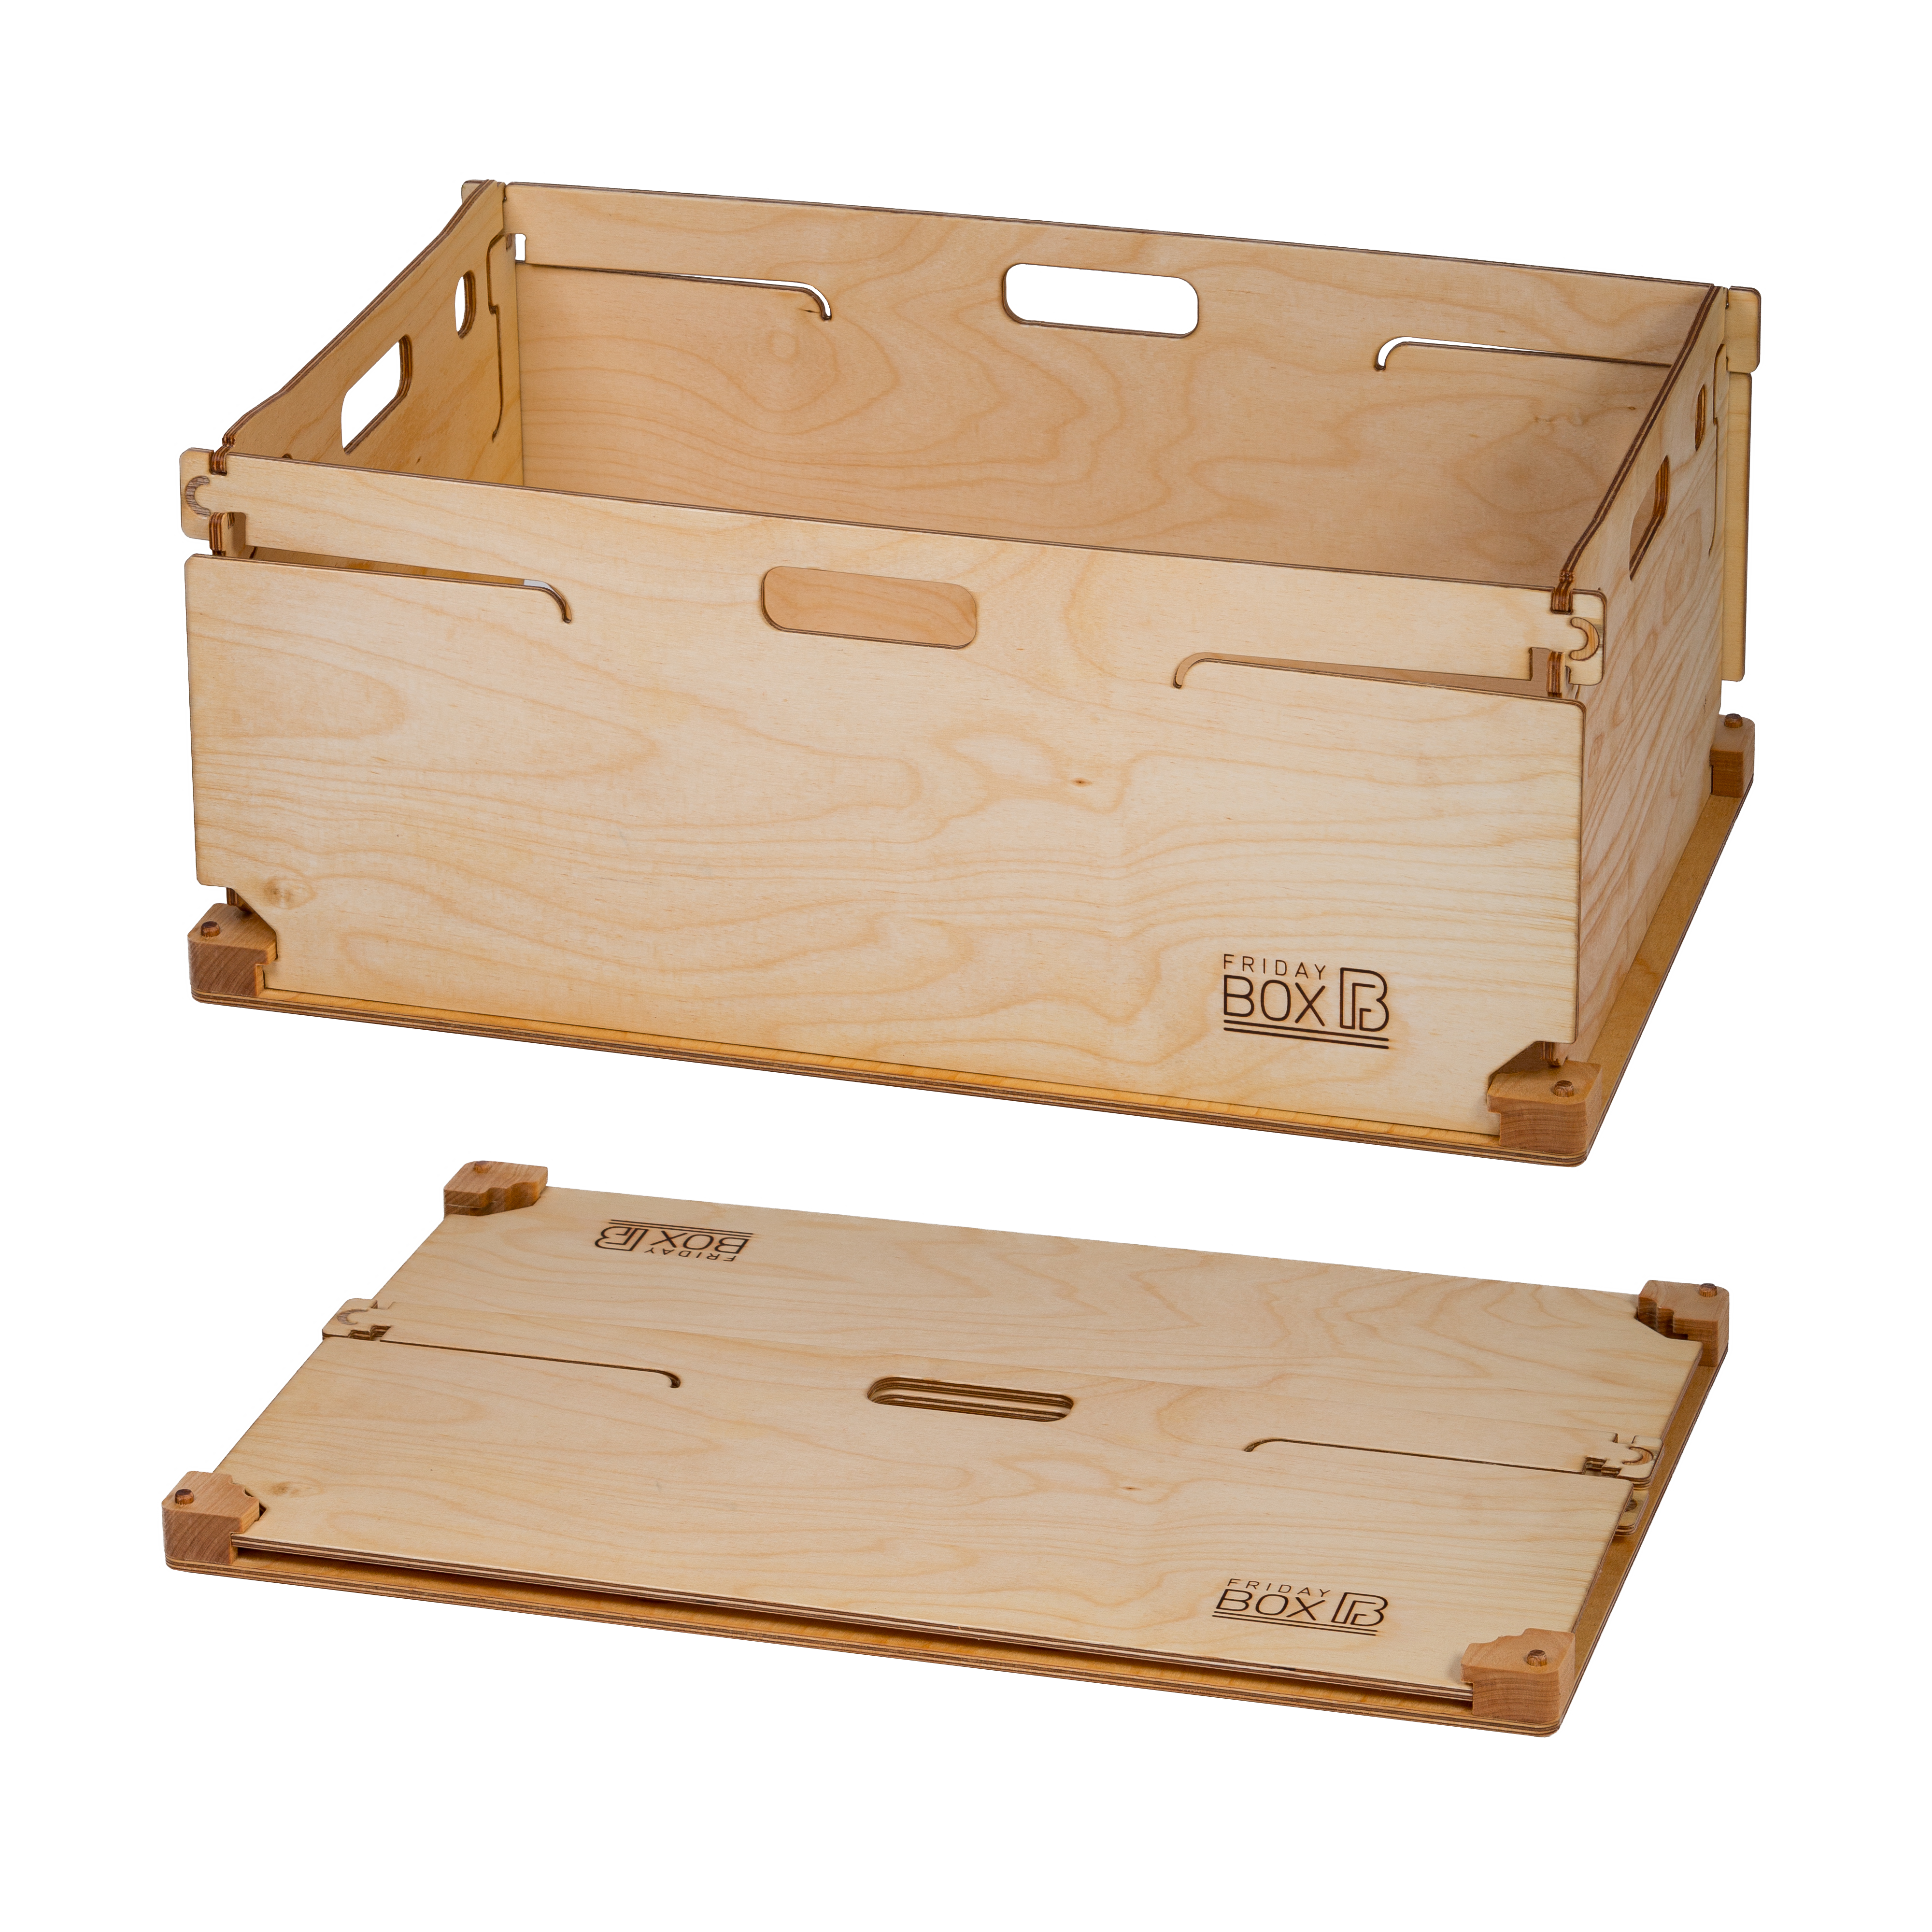 FridayBOX – robust folding box made of wood